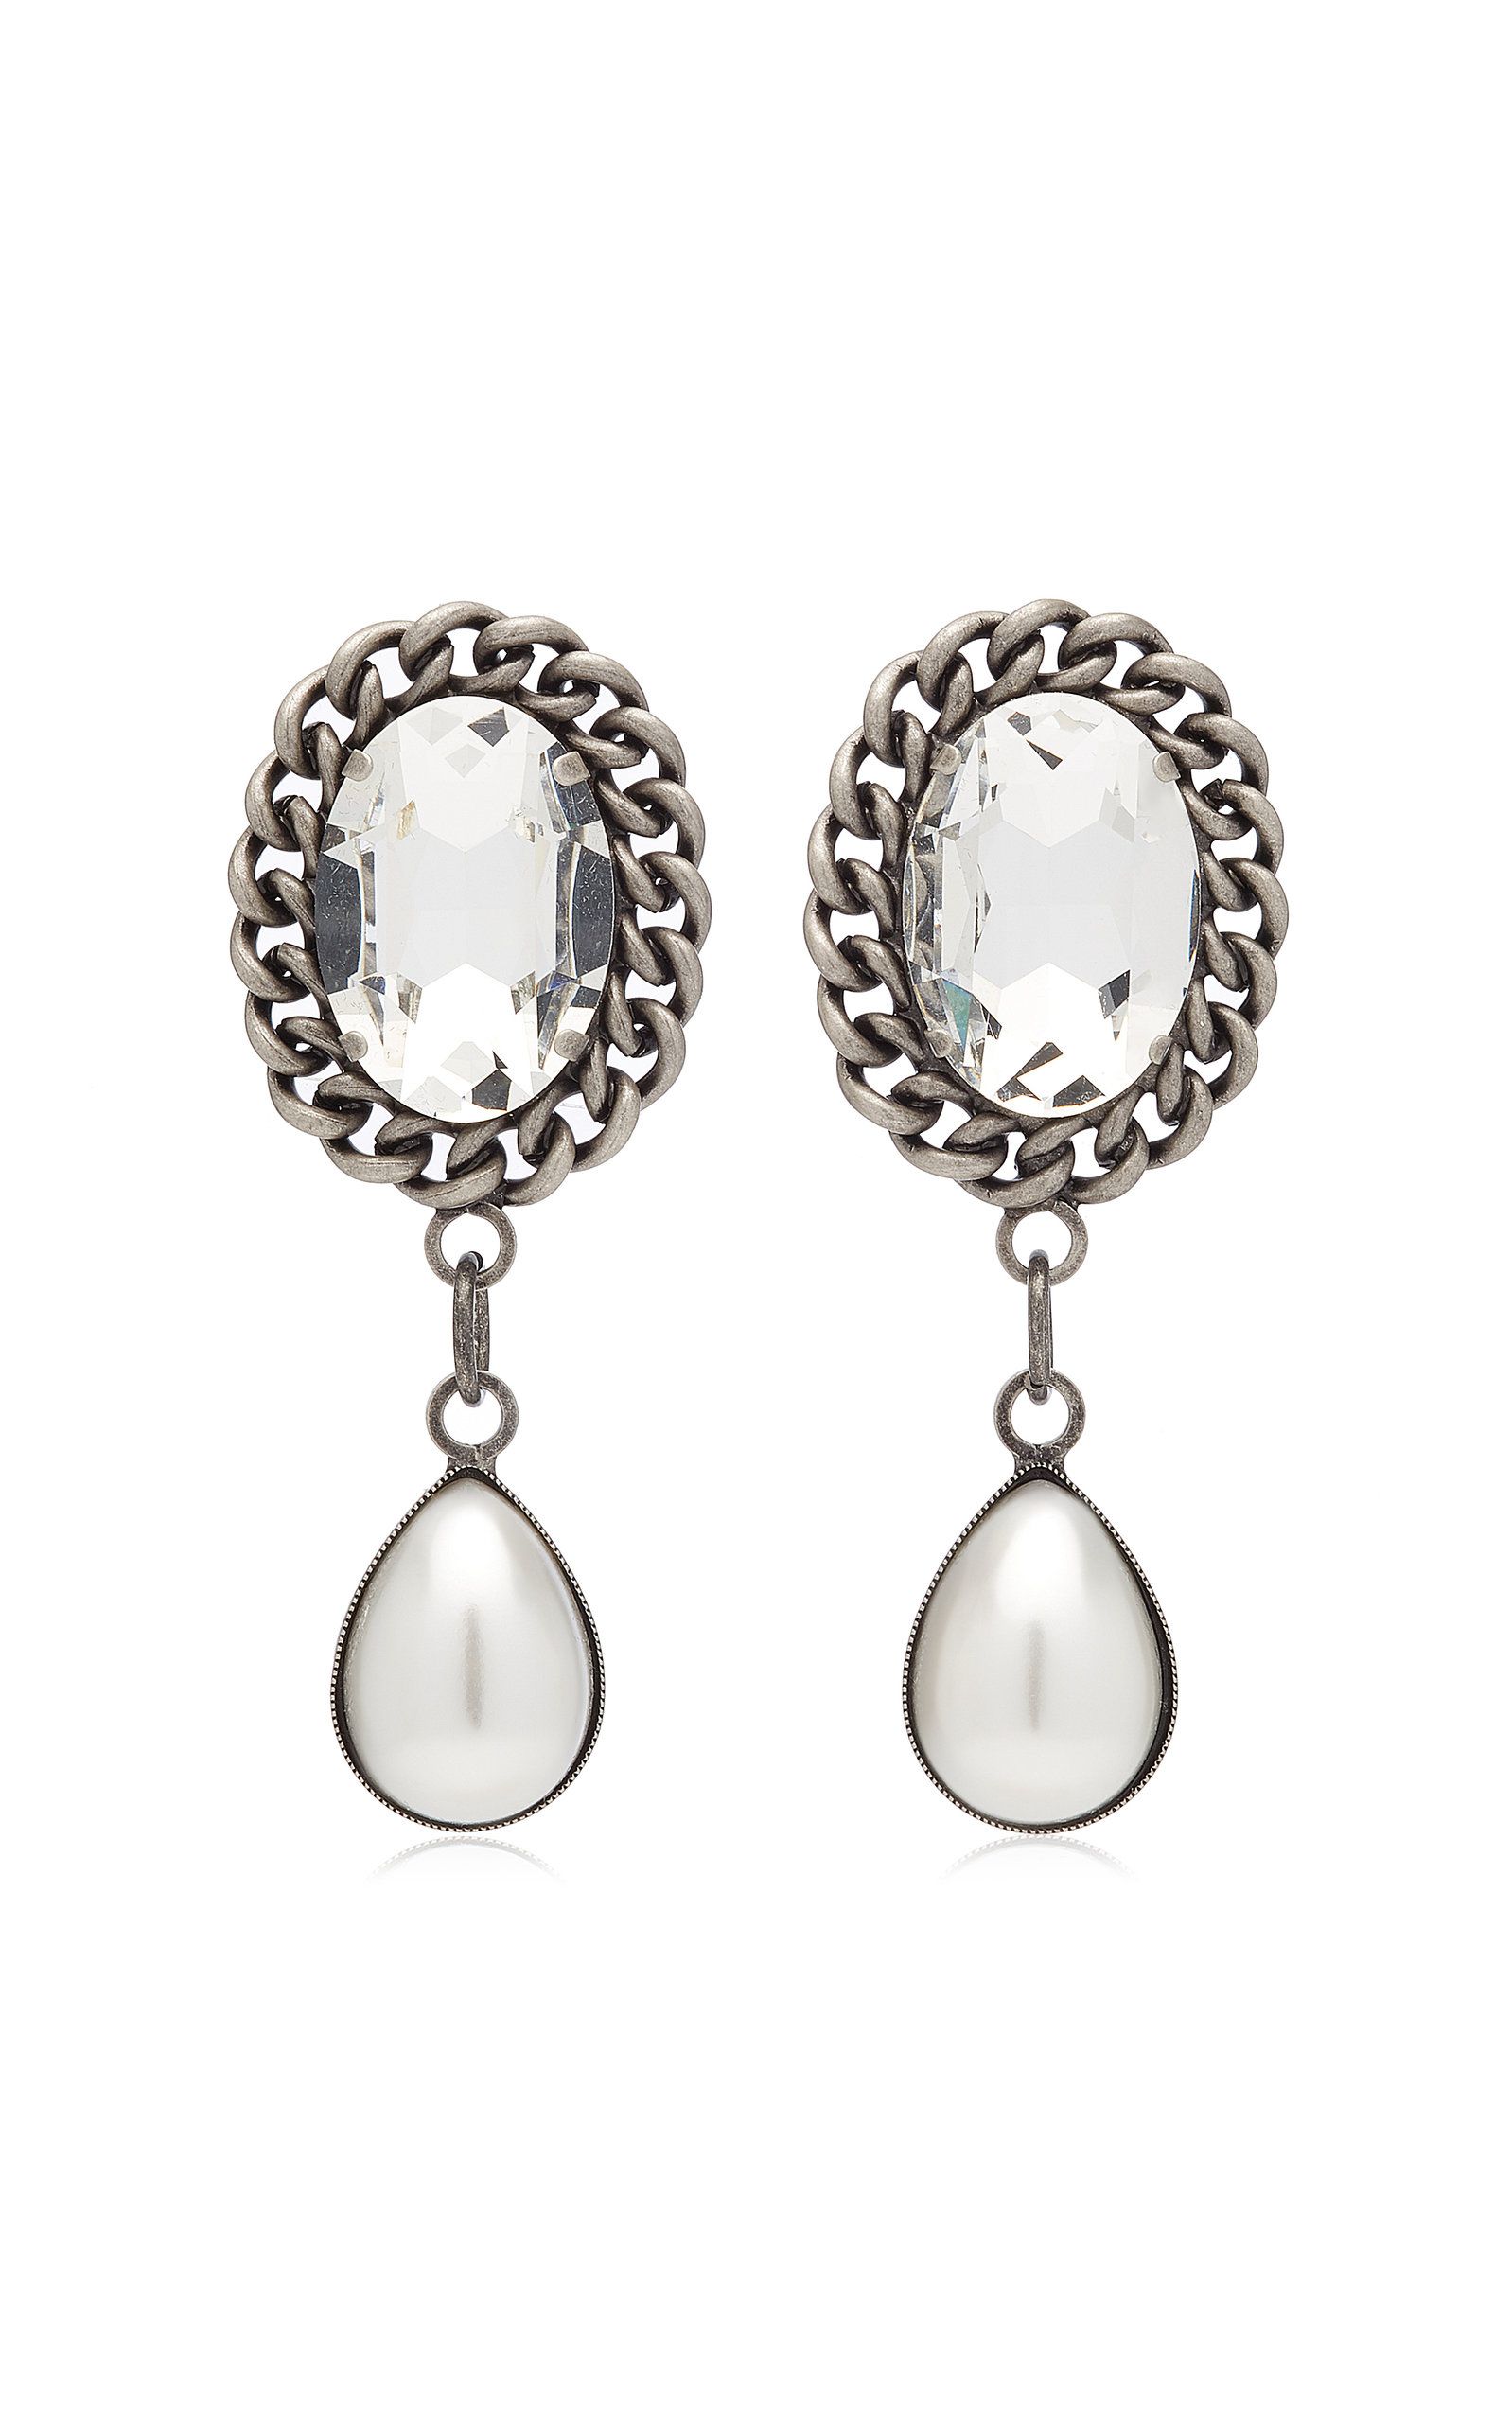 Crystal and Pearl-Embellished Silver-Tone Earrings | Moda Operandi (Global)